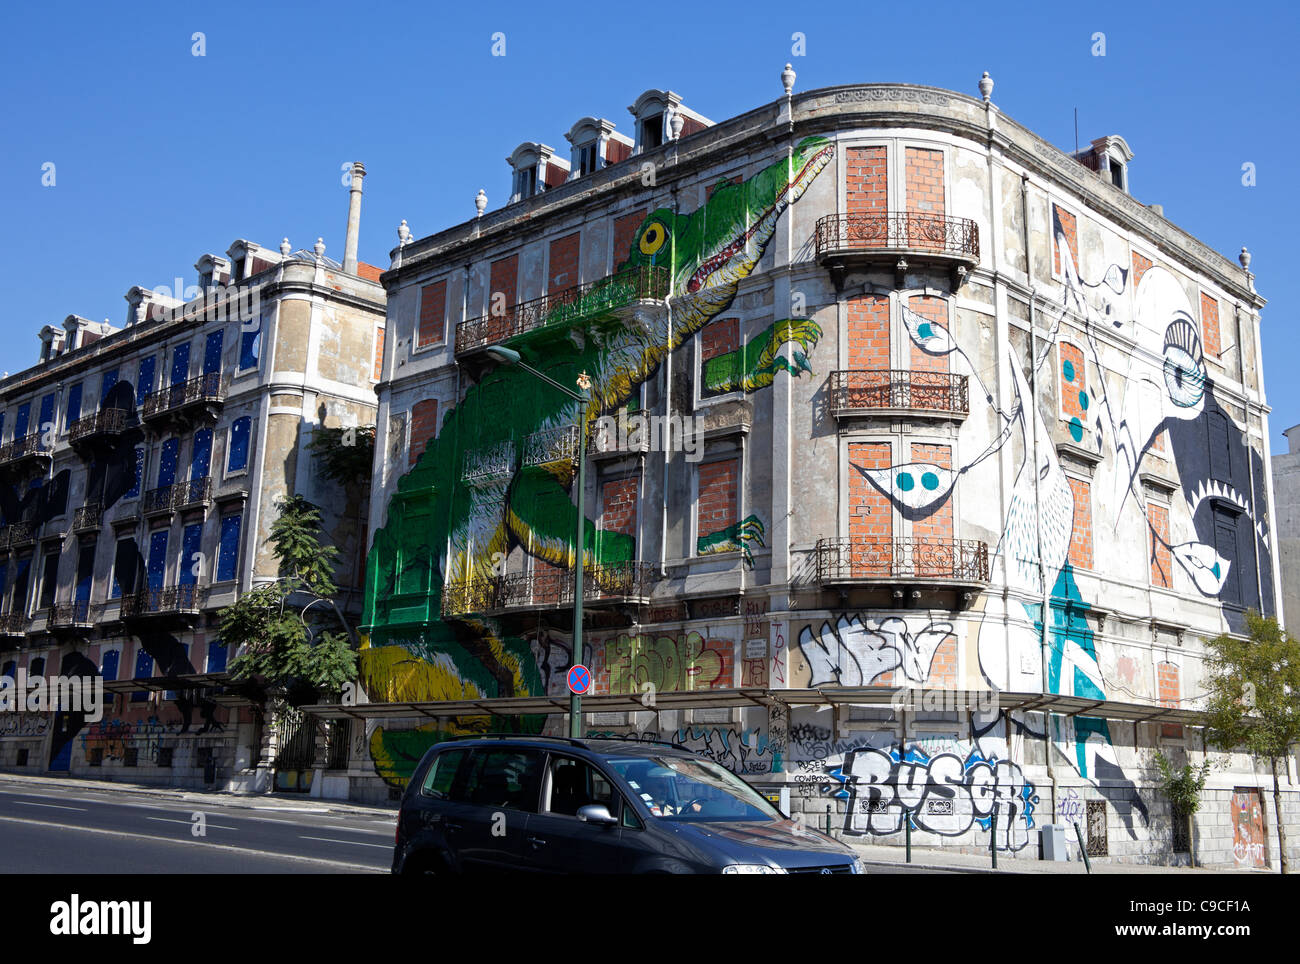 Des graffitis sur des murs extérieurs du bâtiment abandonné, Lisbonne Portugal Europe Banque D'Images